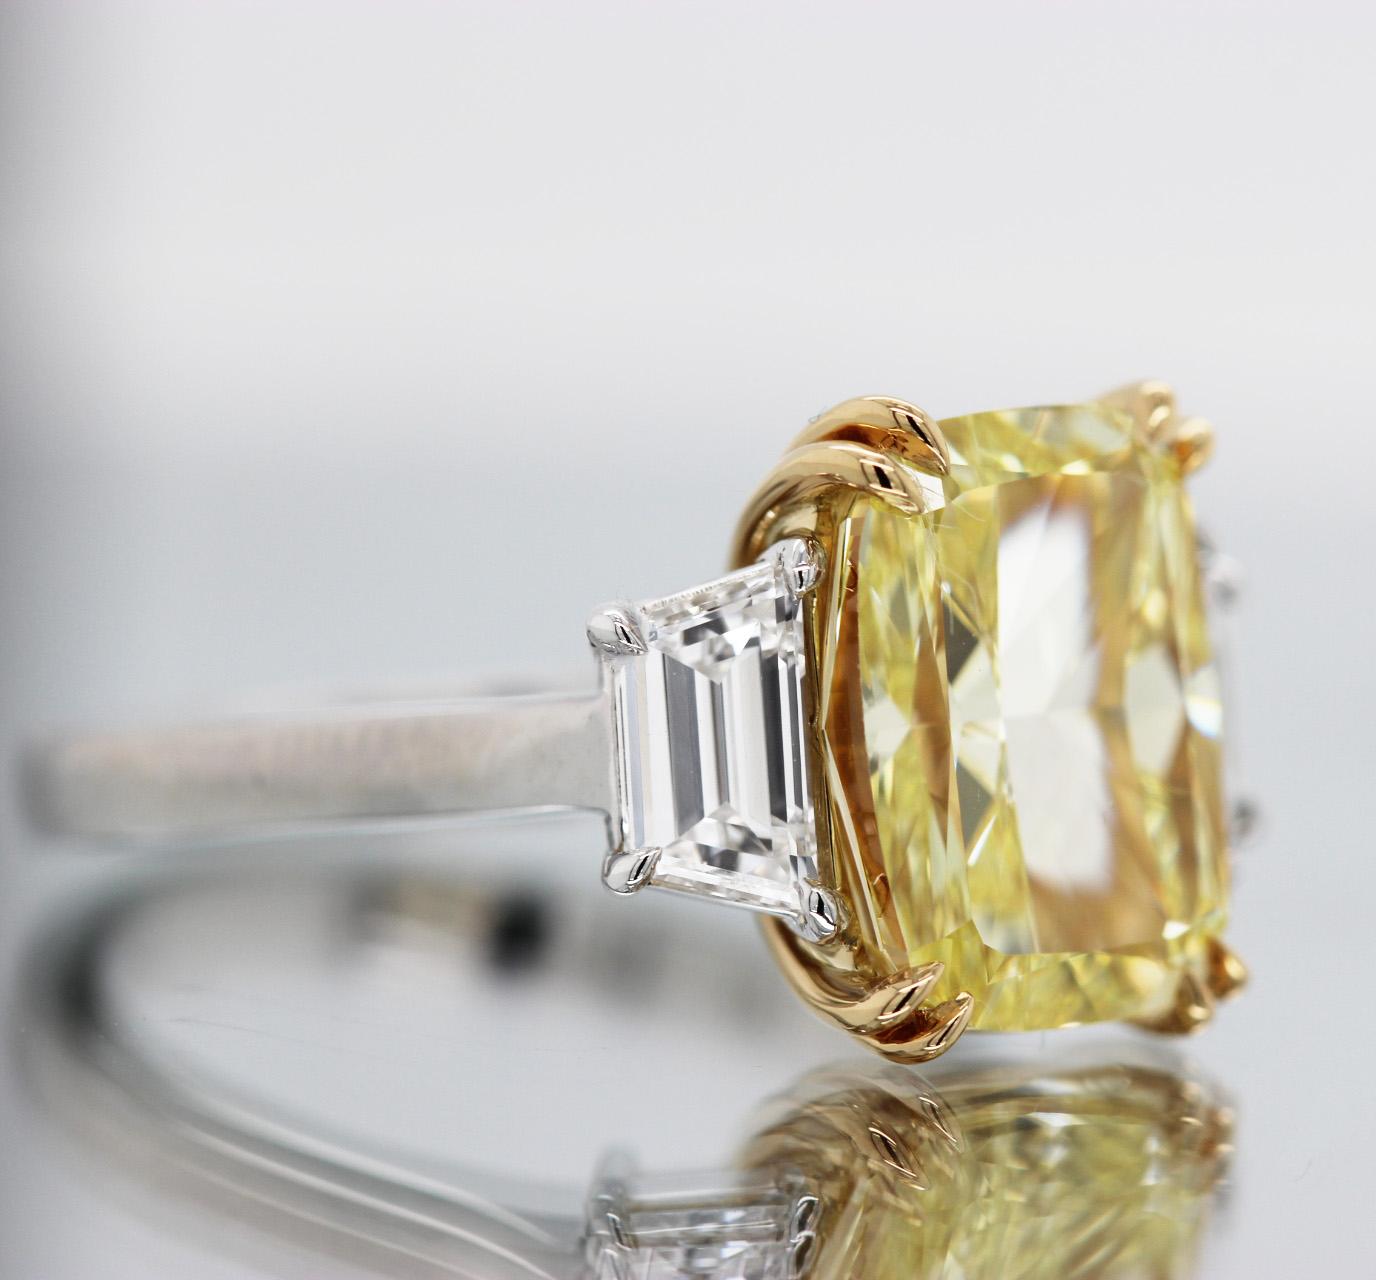 GIA-zertifizierter 5+ Karat Diamantring mit Kissenschliff in intensivem Gelb von Scarselli. Drei-Stein-Verlobungsring mit natürlichem, intensiv gelbem, kissenförmig geschliffenem Diamant in einer Fassung aus 18 Karat Gelbgold und Platin.

Dieser